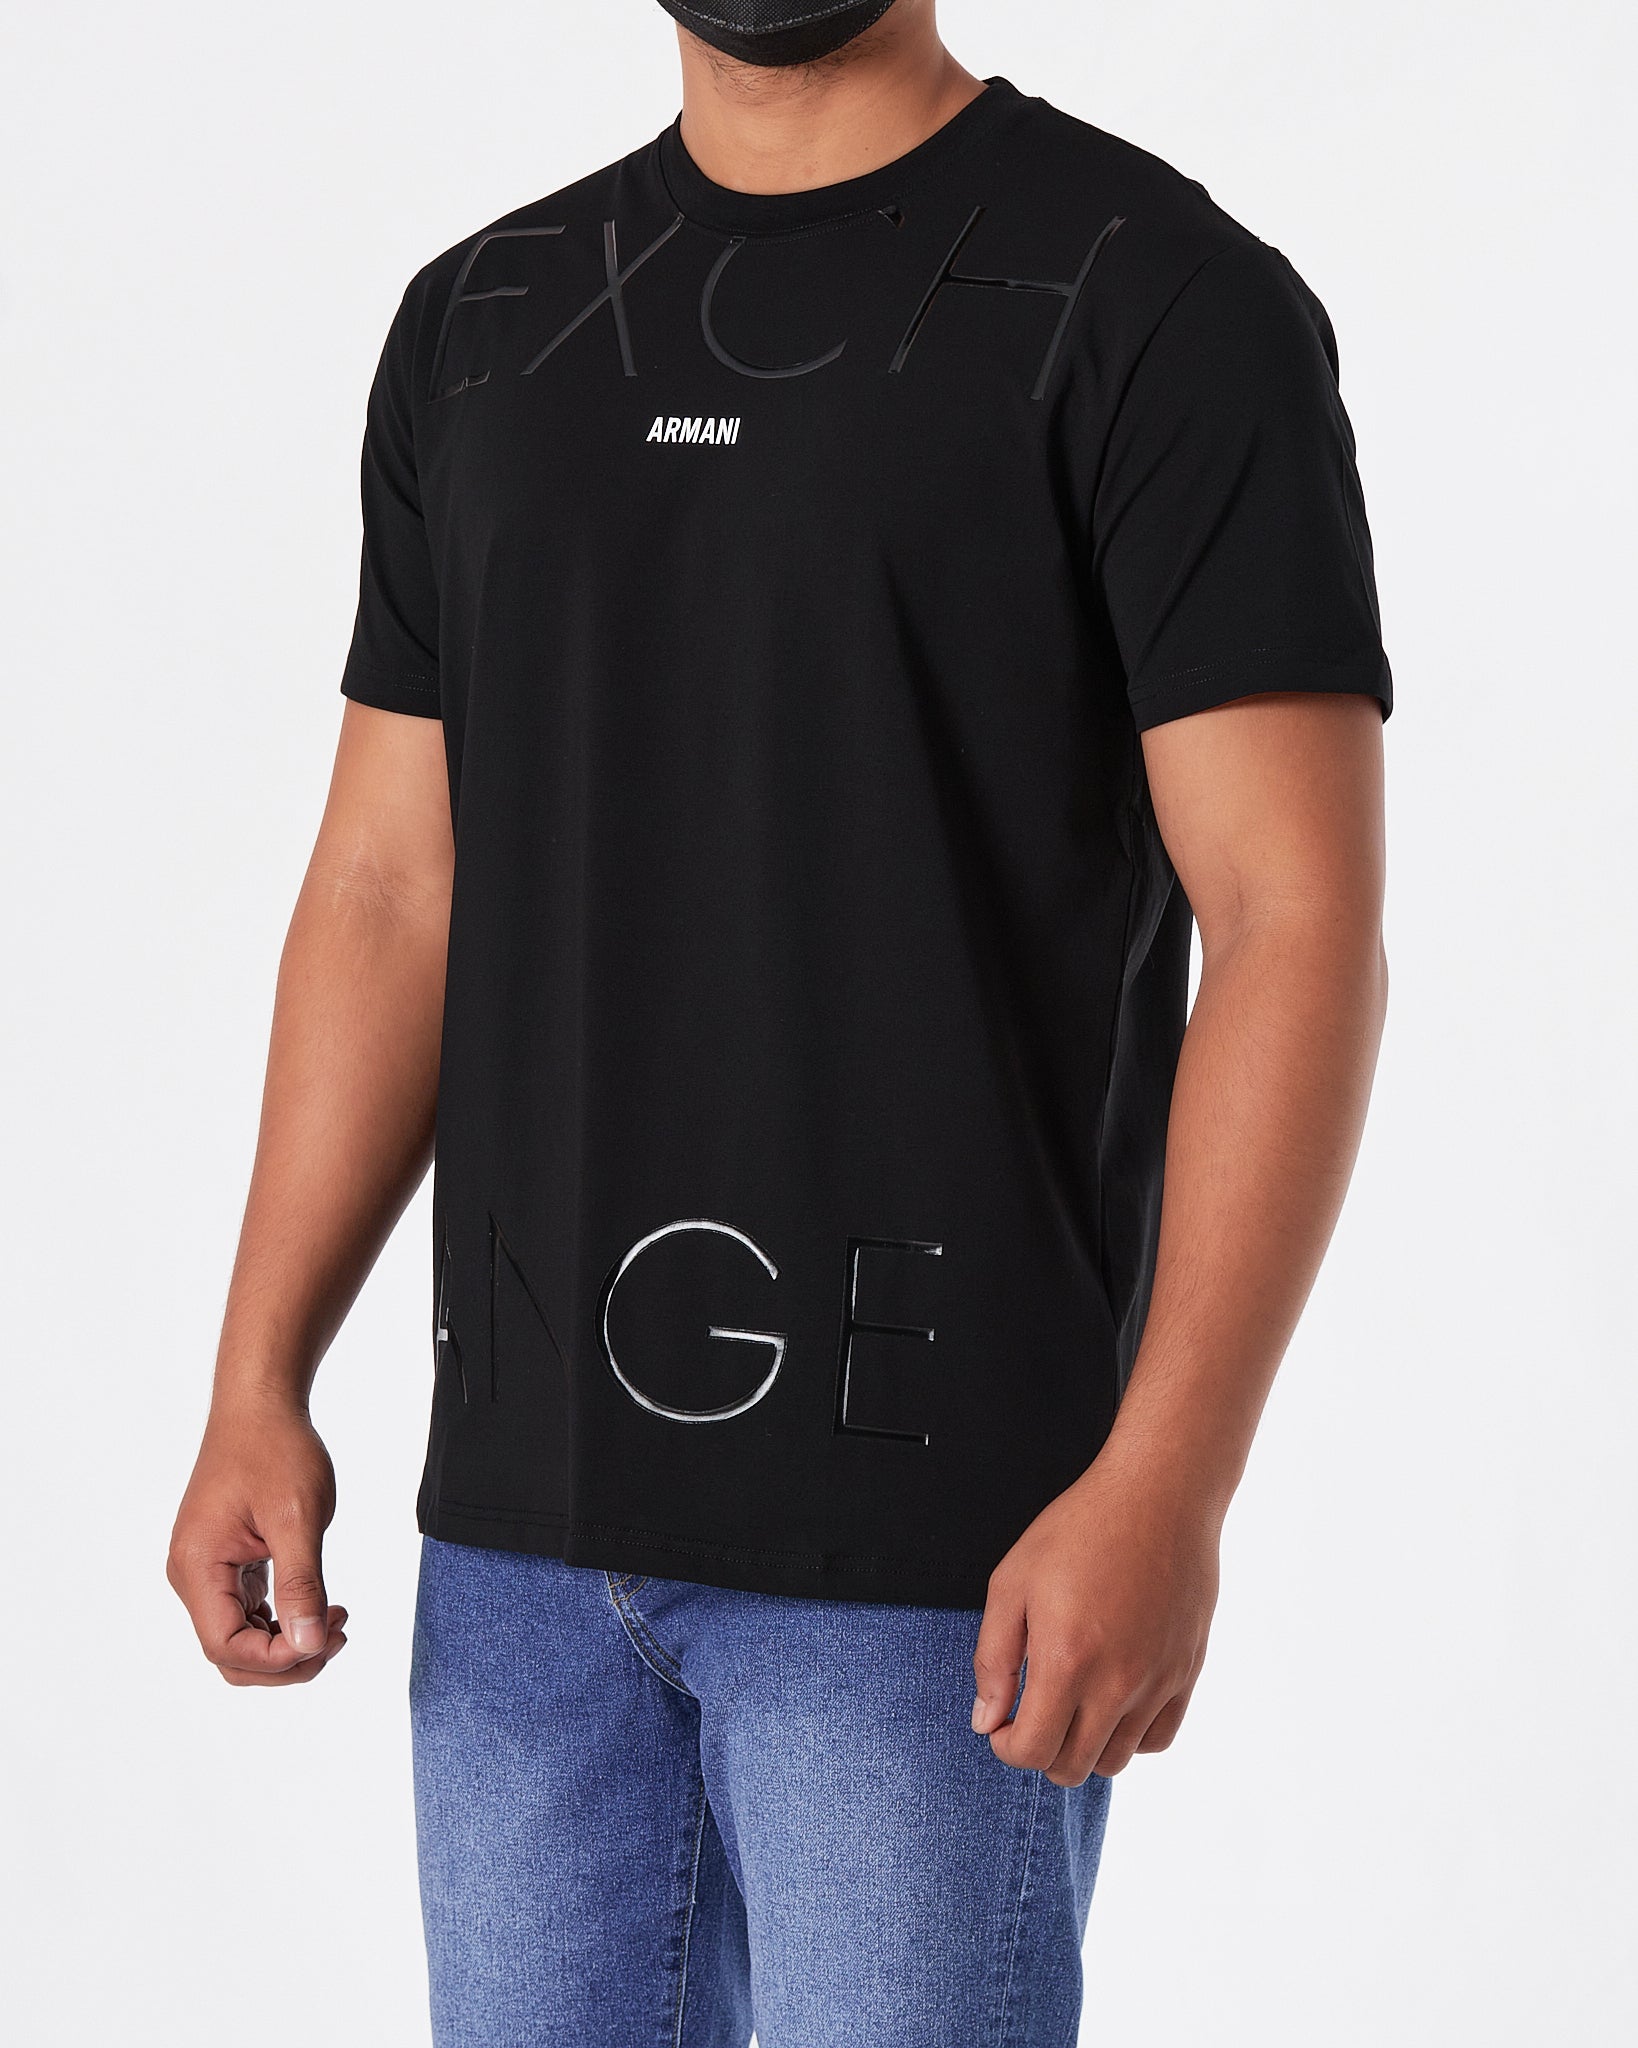 ARM Exchange Logo Printed Men Black T-Shirt 15.90